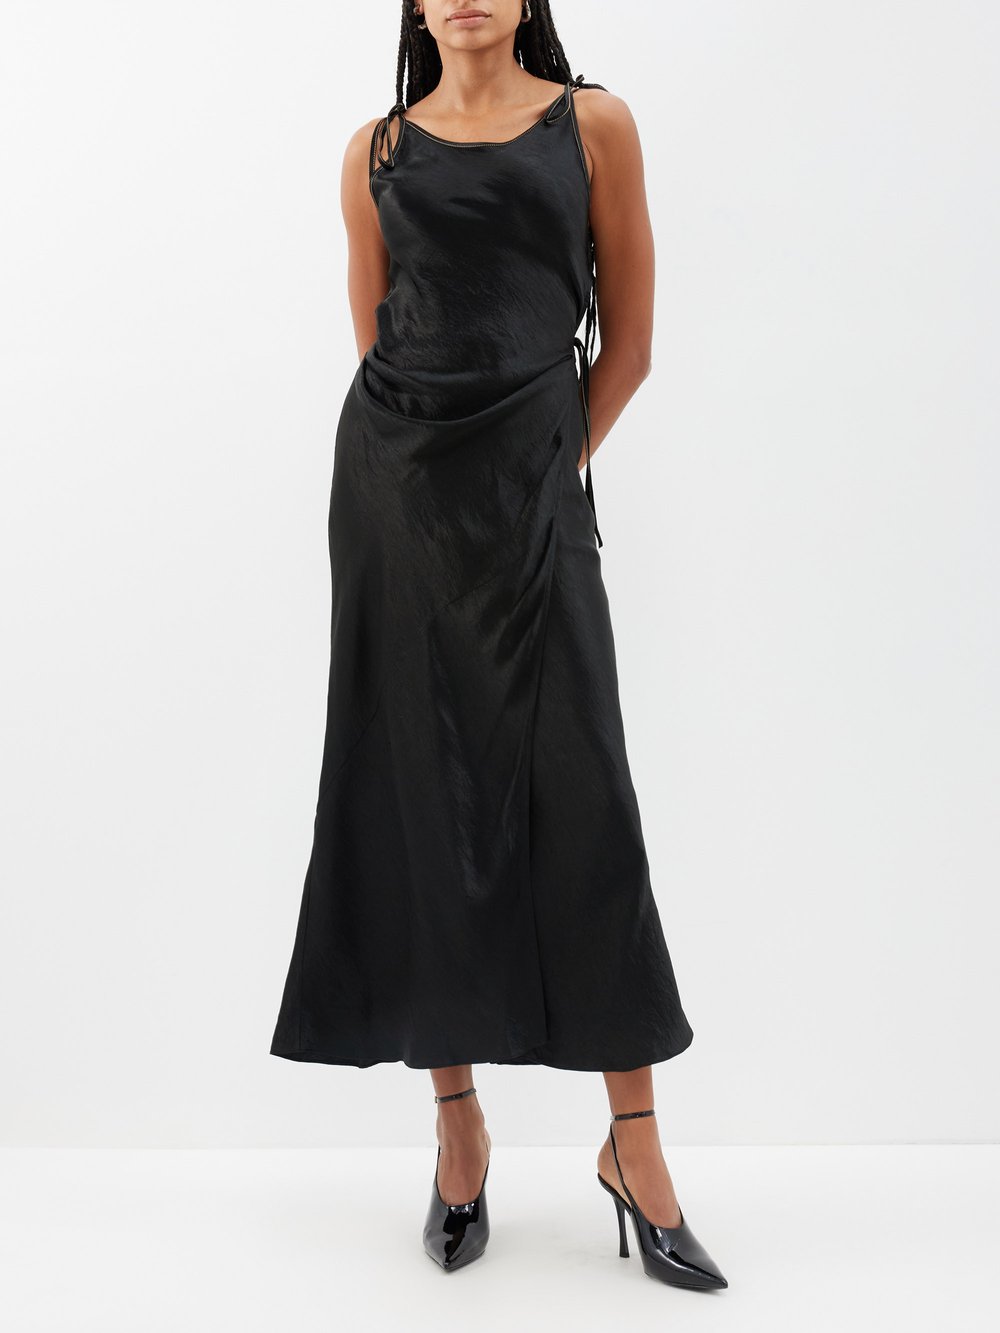 Атласное платье dayla с галстуком-бабочкой Acne Studios, черный черное платье миди с рюшами acne studios цвет black